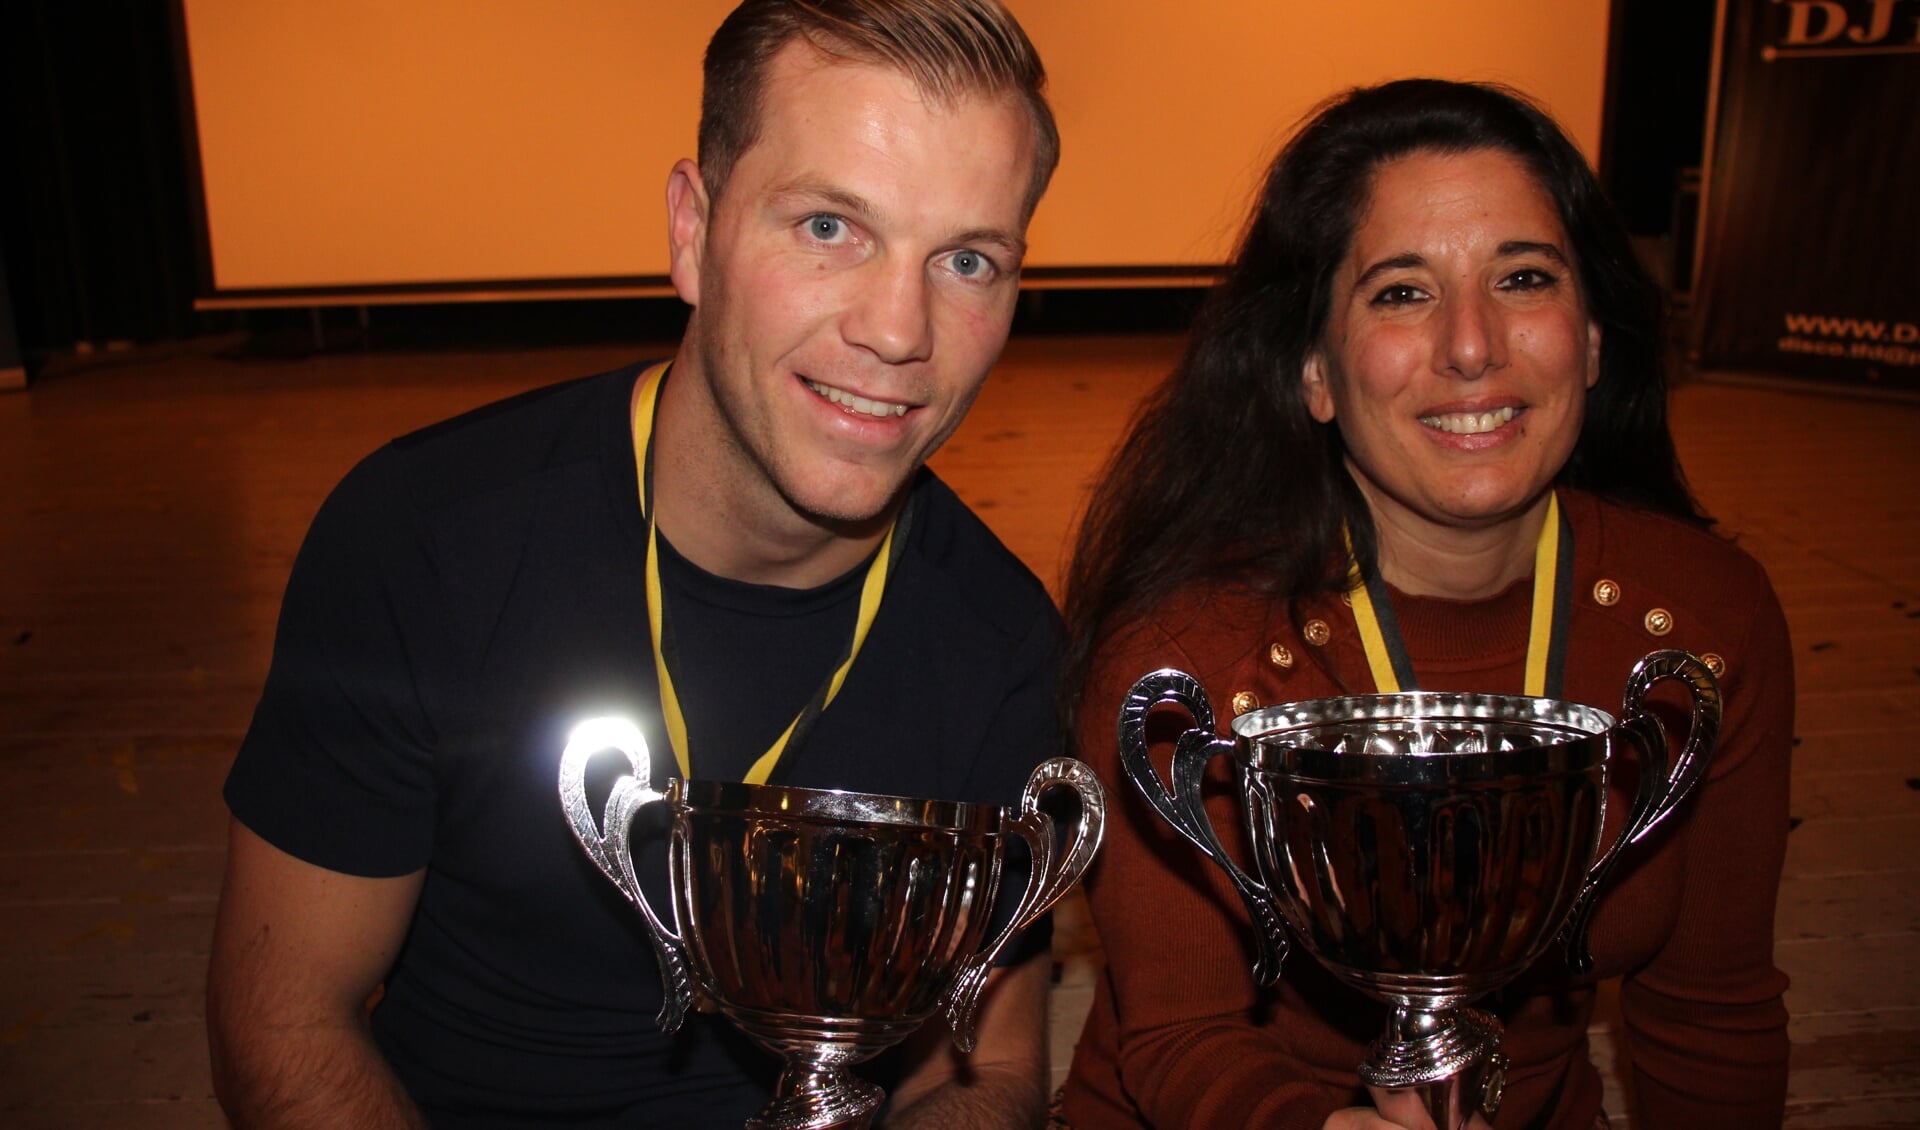 Roy Korving en Iris Wisse zijn uitgeroepen tot sportman en sportvrouw van het jaar. (foto en tekst: Erik van Leeuwen) 